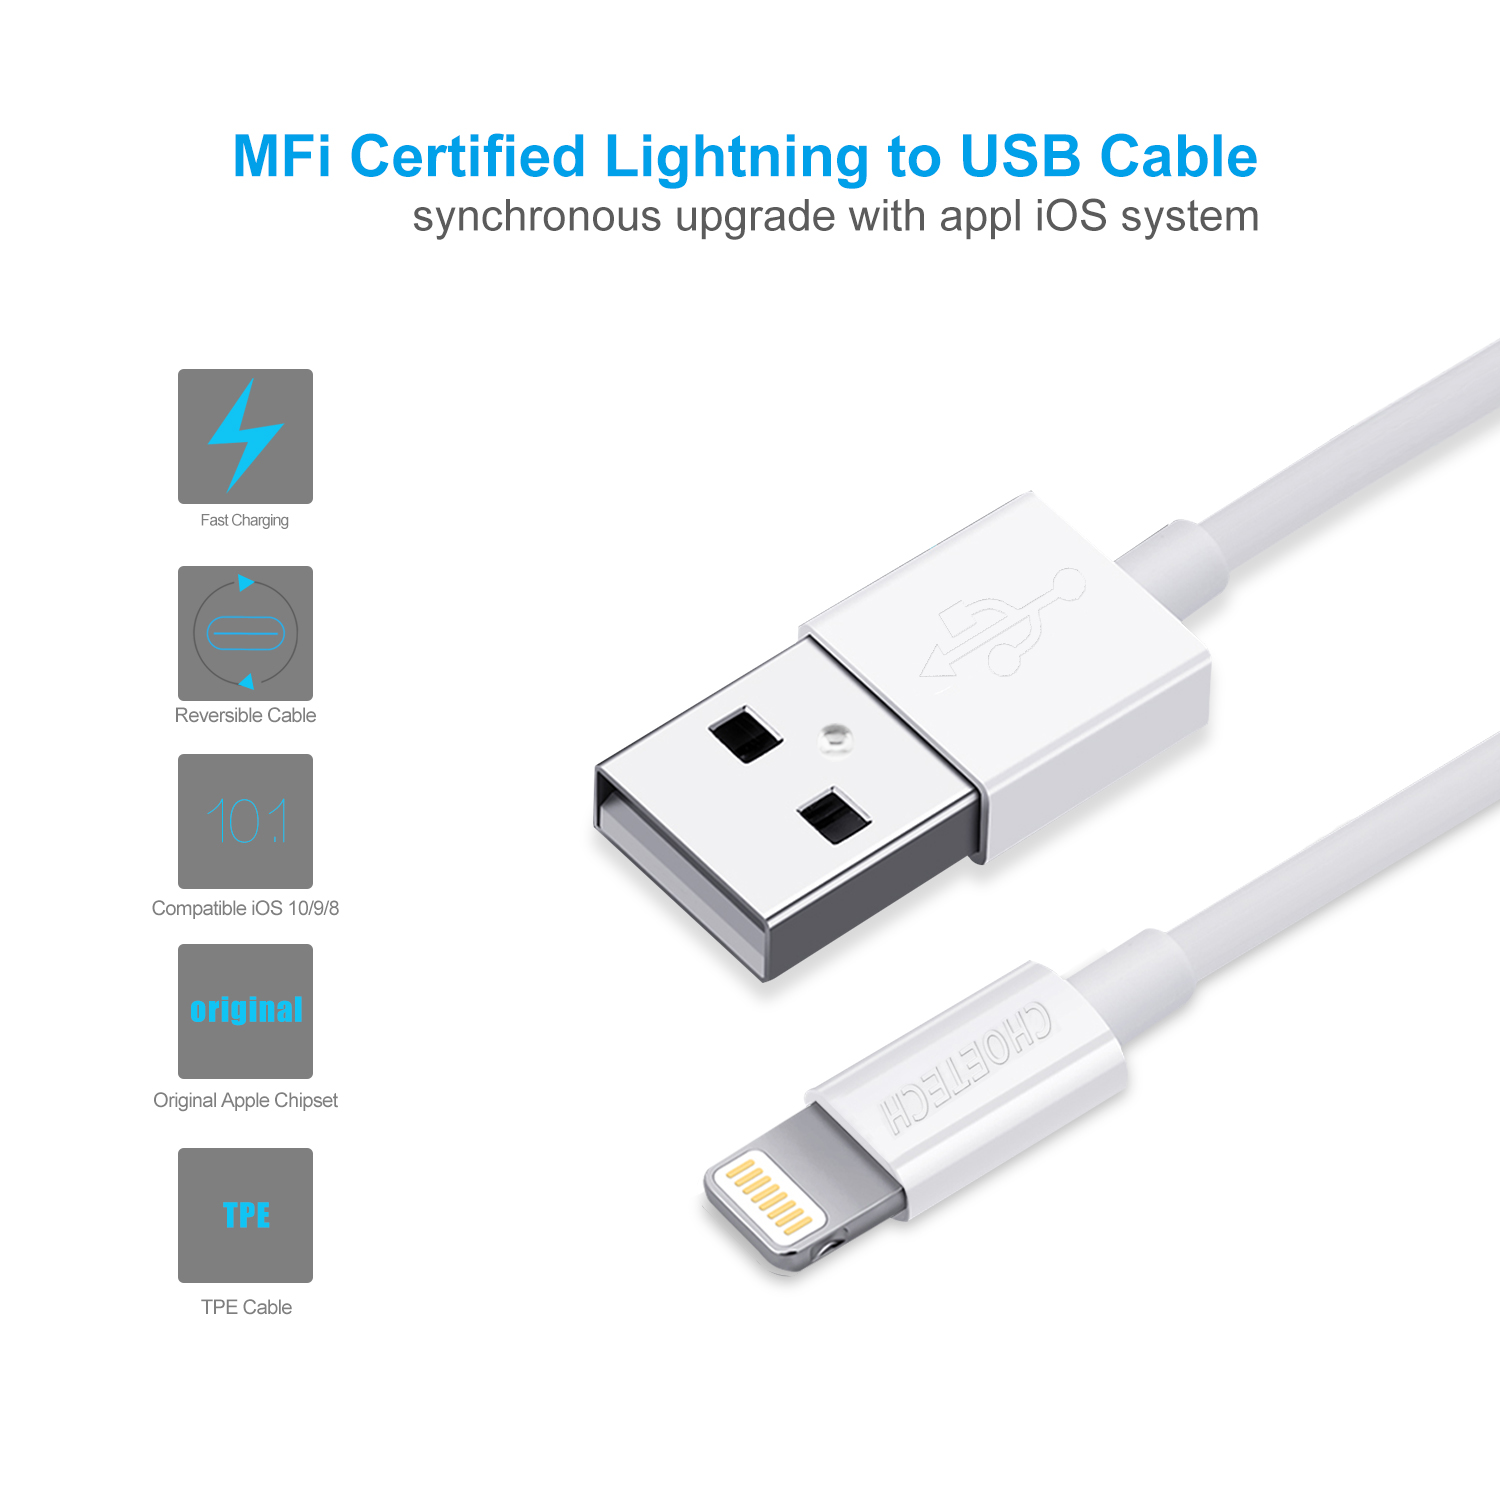 สายชาร์จ Choetech รุ่น USB to Lightning Cable 1.8m MFI Certified Nickel-plated Connectors (IP0027) - สีขาว